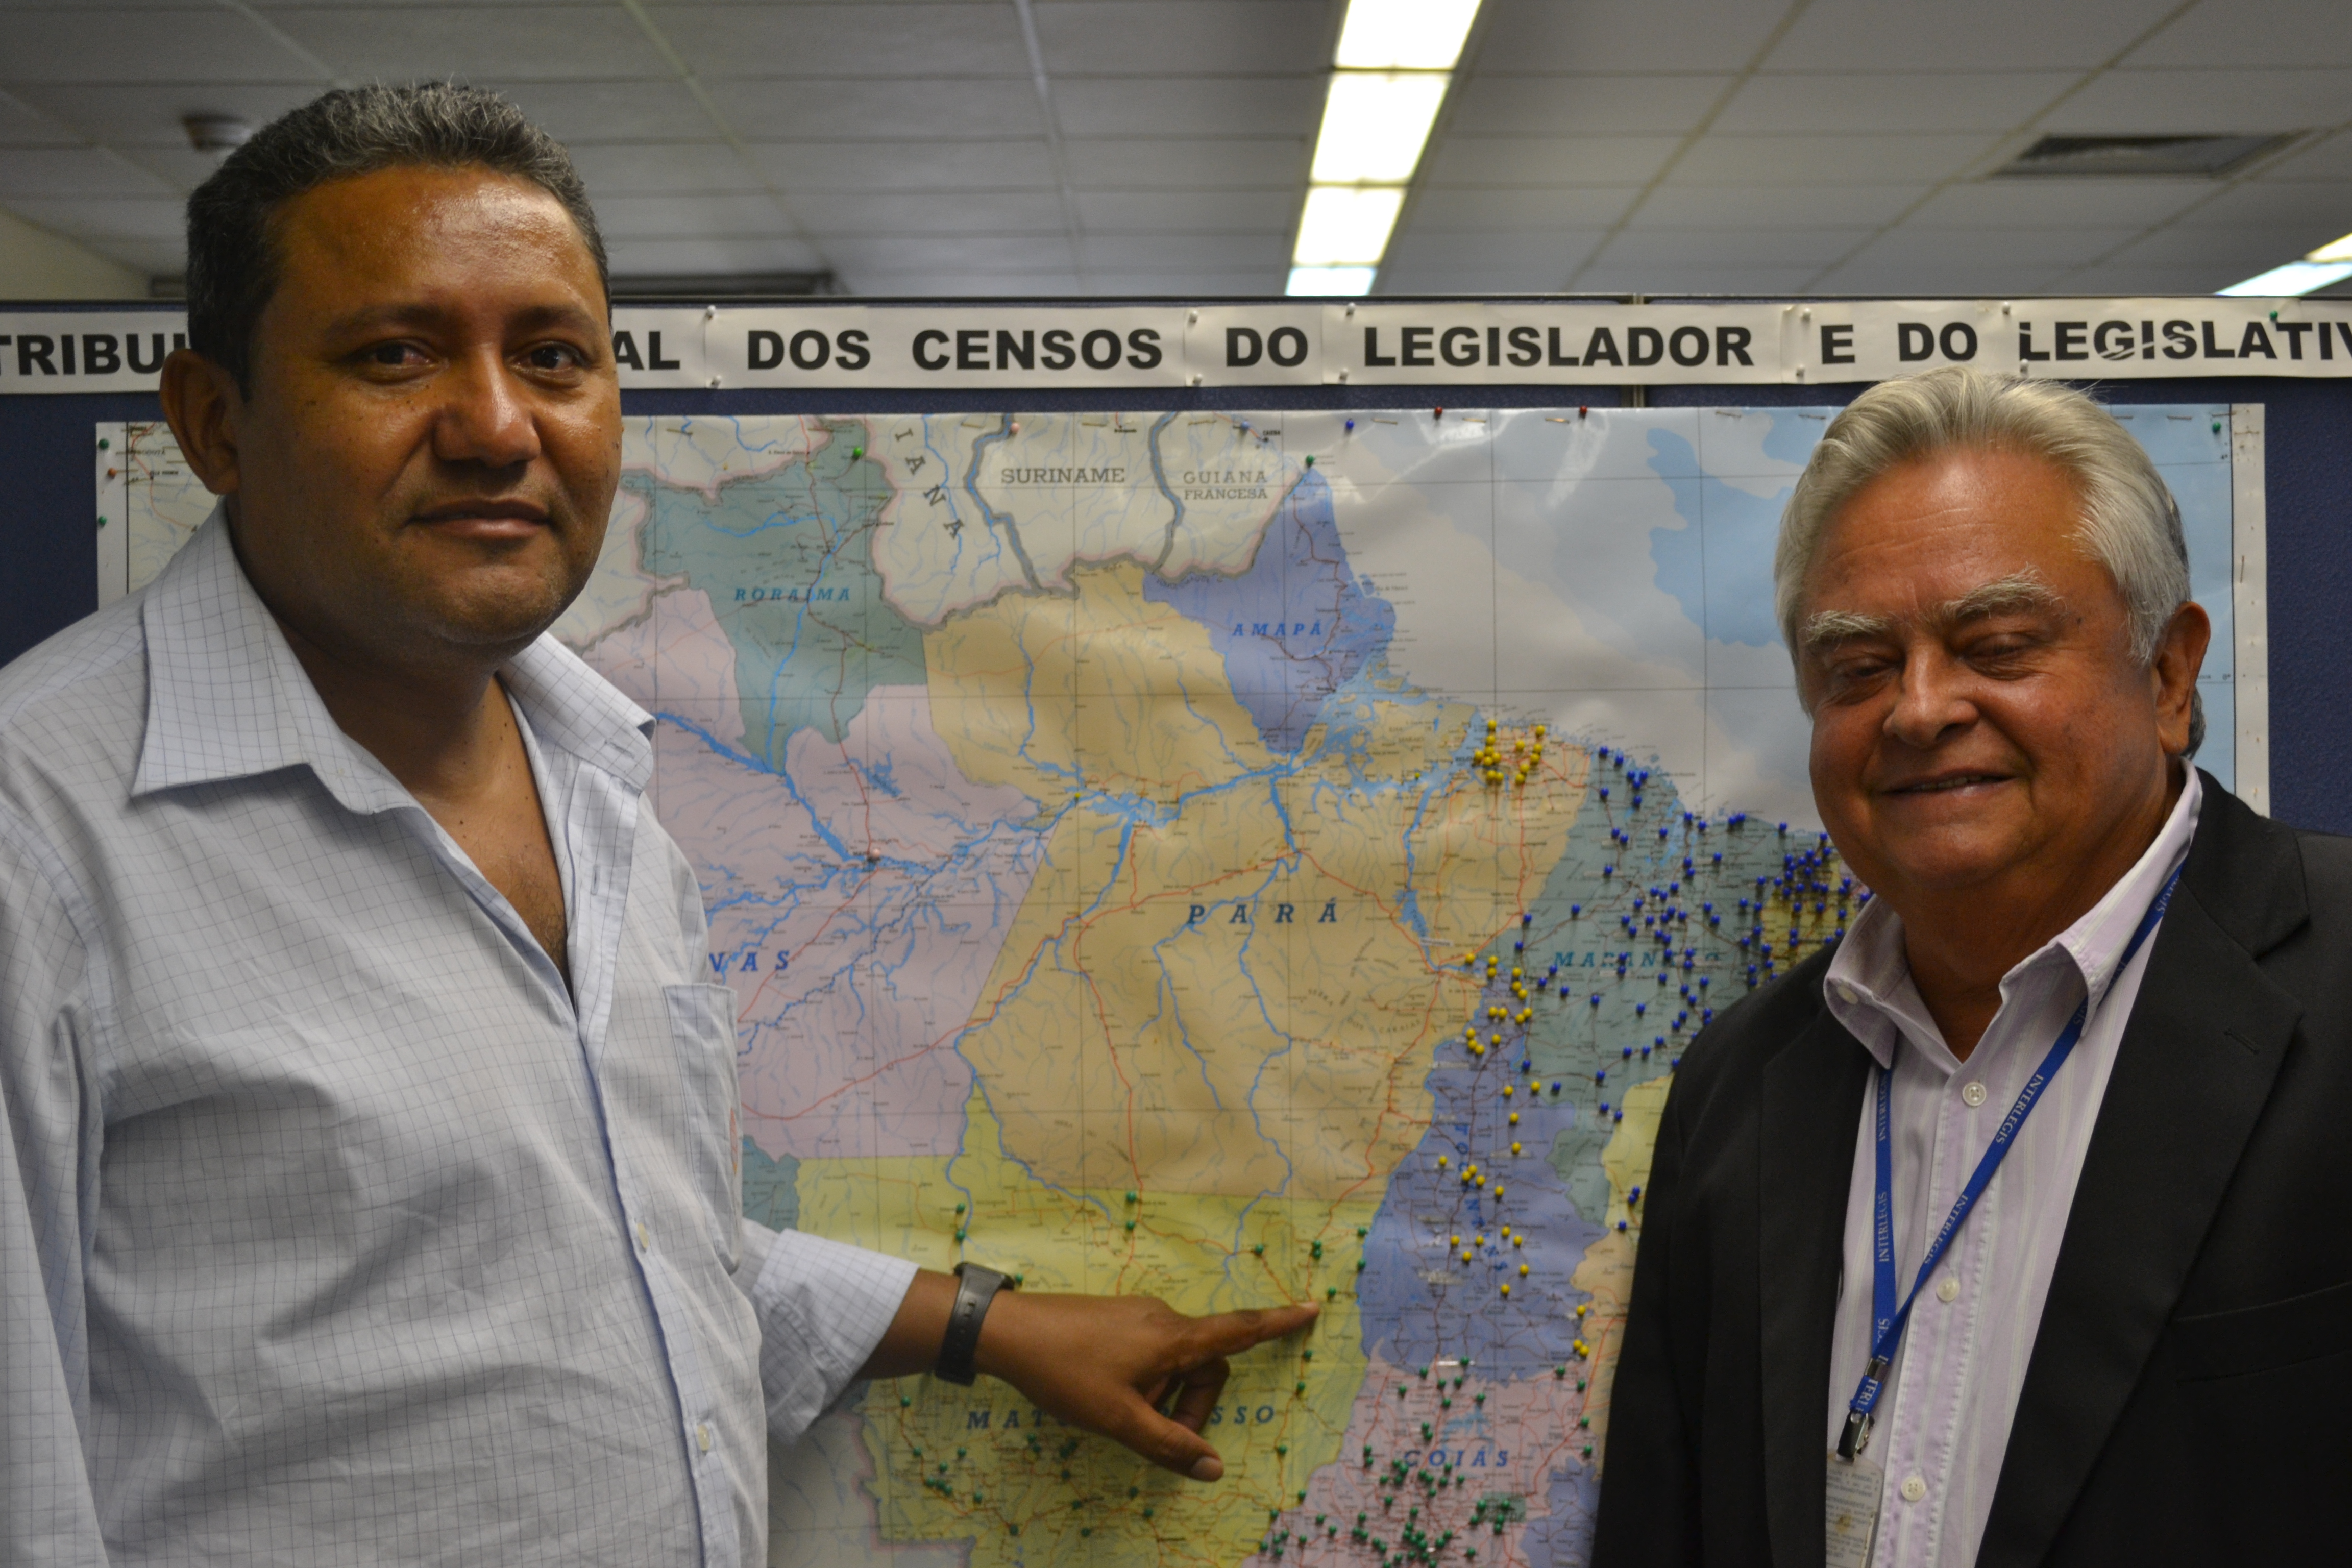 Presidente da Câmara de Santana do Araguaia, no Pará, elogia atendimento do Interlegis